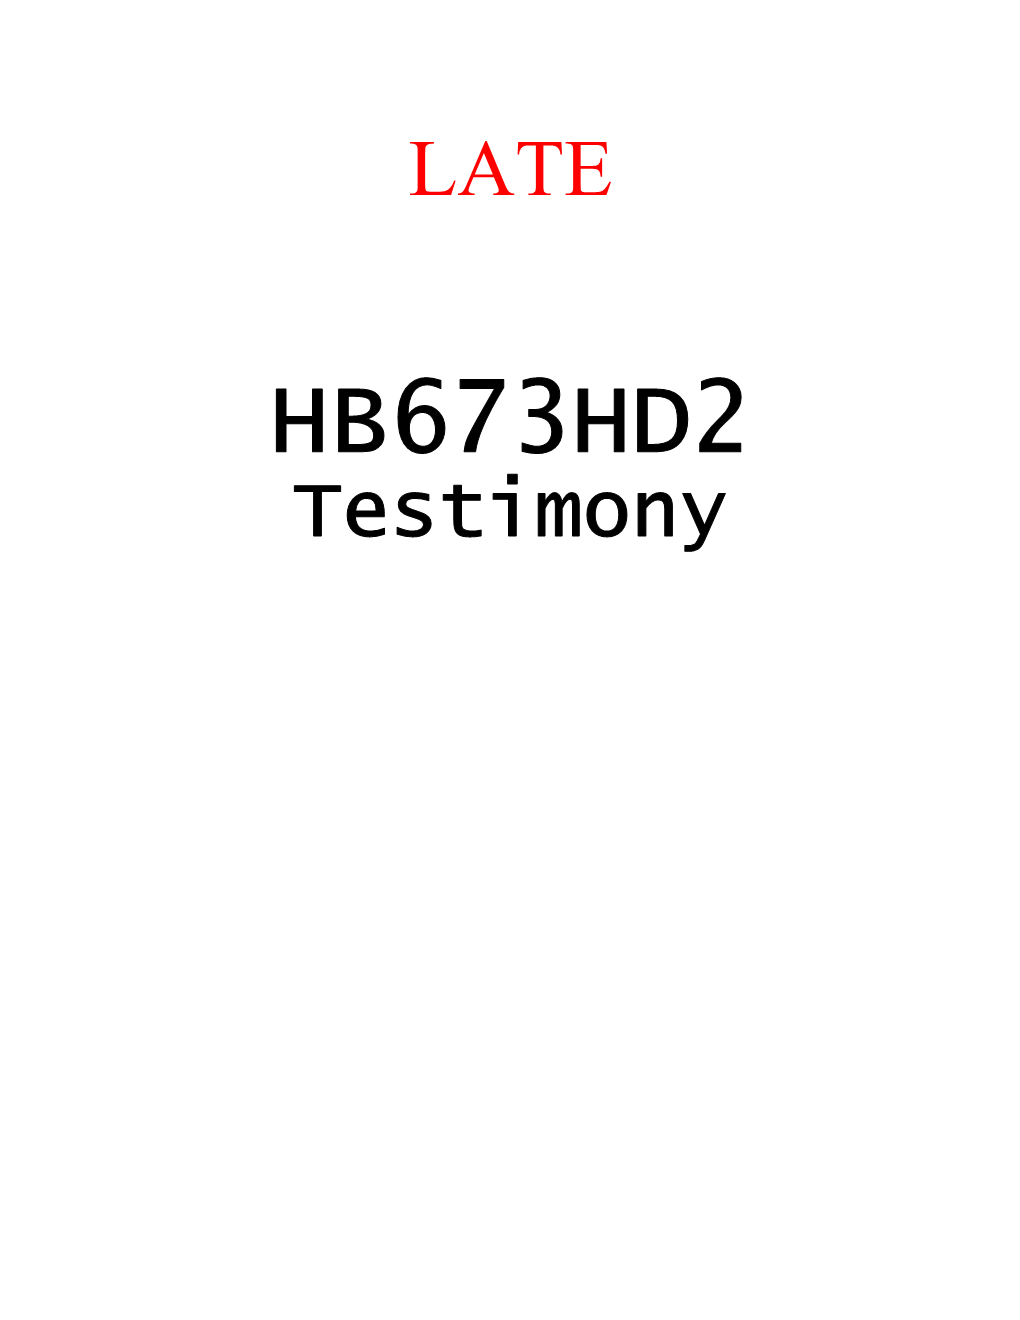 Hb673 Hd2 Testimony Agl Ene 03